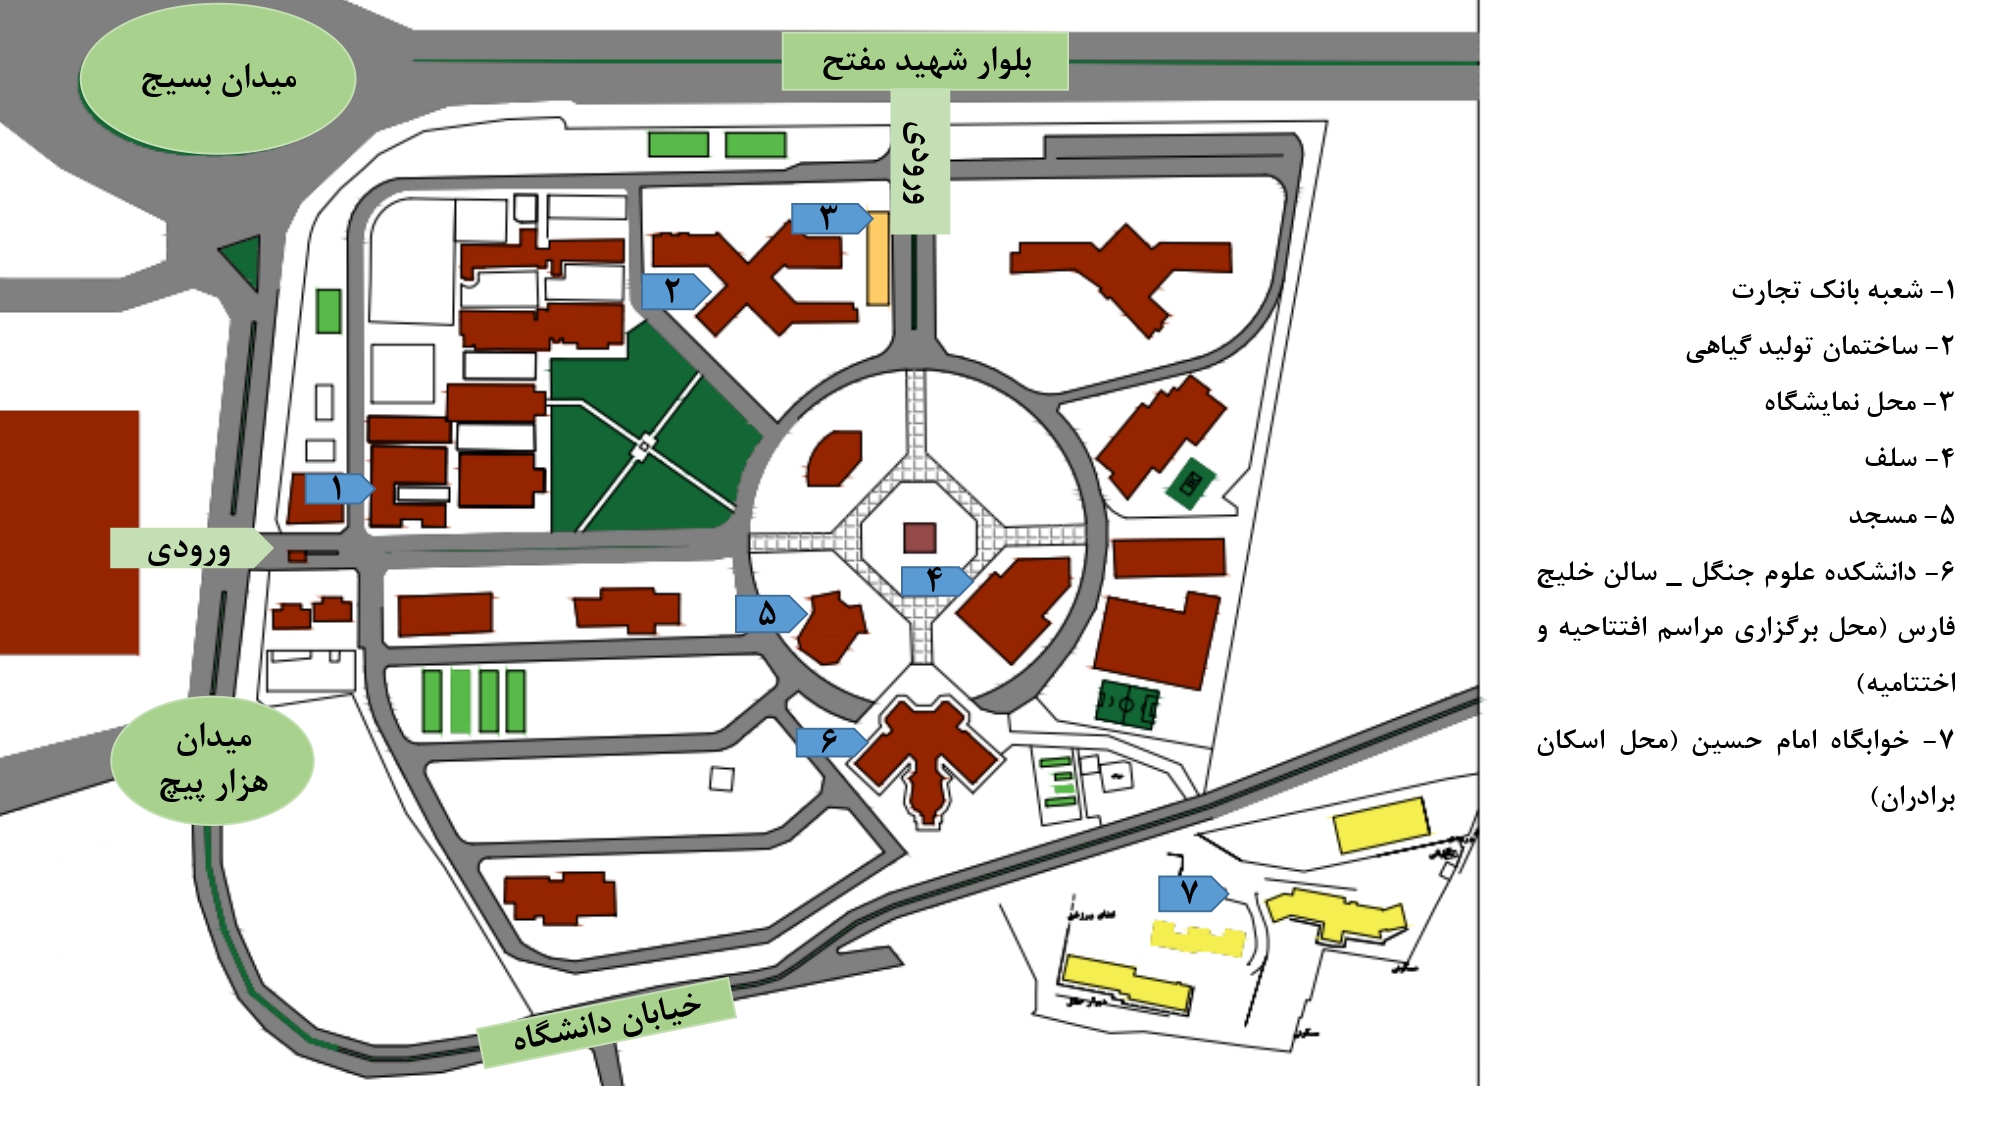 نقشه محل برگزاری سیزدهمین کنگره علوم باغبانی ایران (پردیس دانشگاه علوم کشاورزی و منابع طبیعی گرگان)